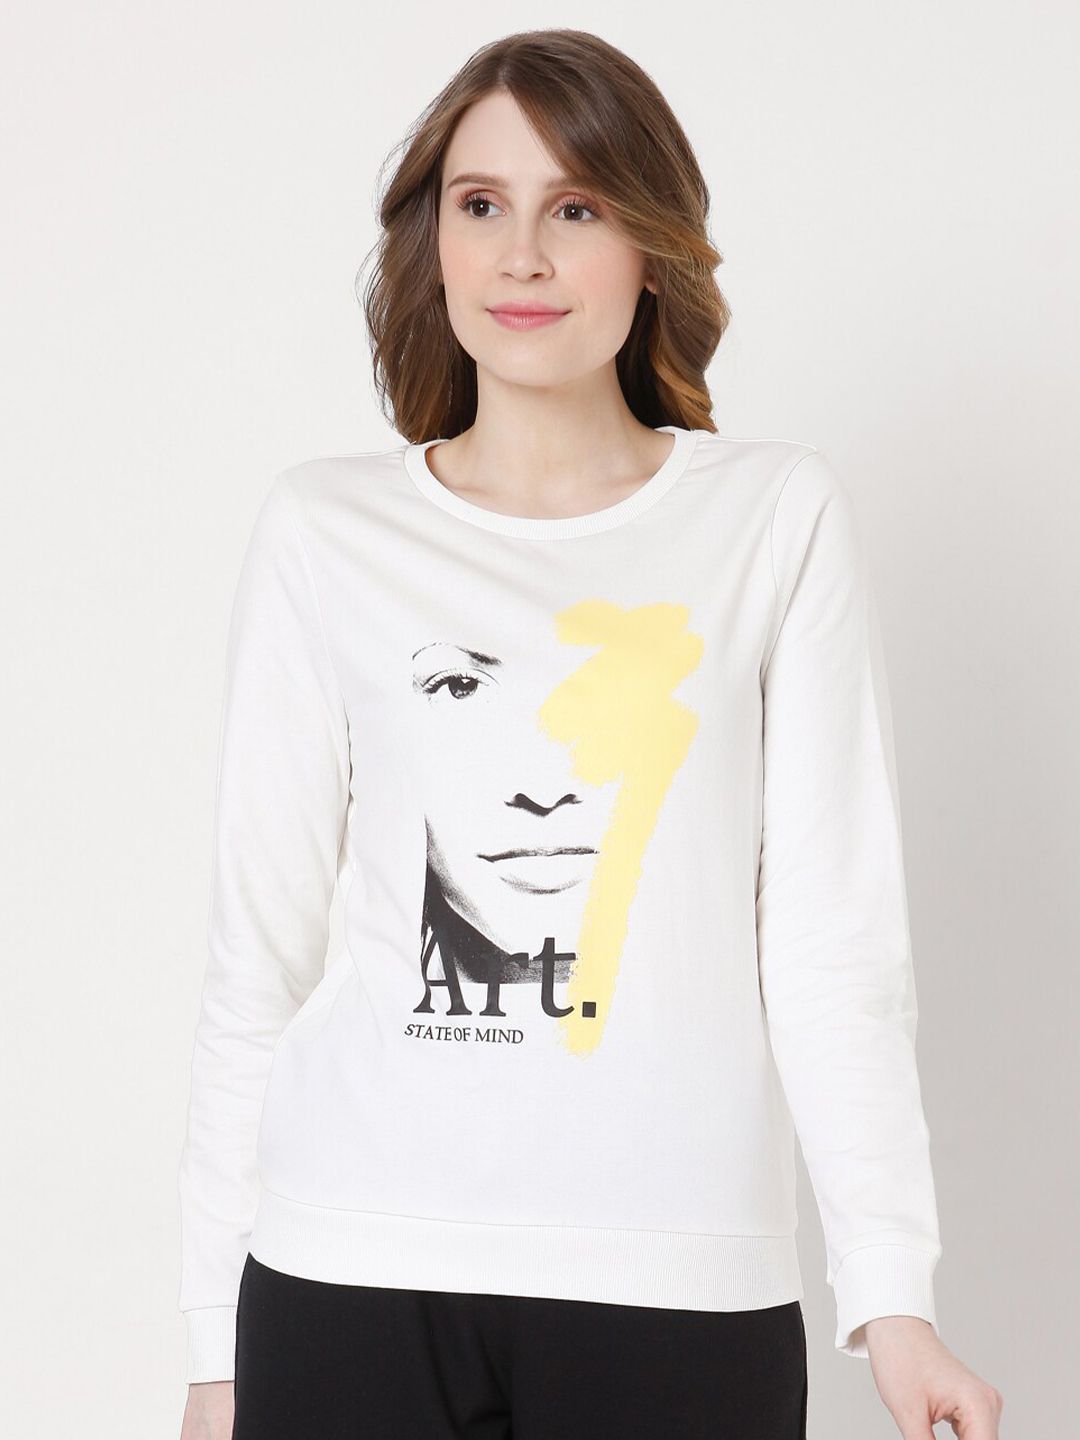 Vero Moda Women White Printed Sweatshirt Price in India